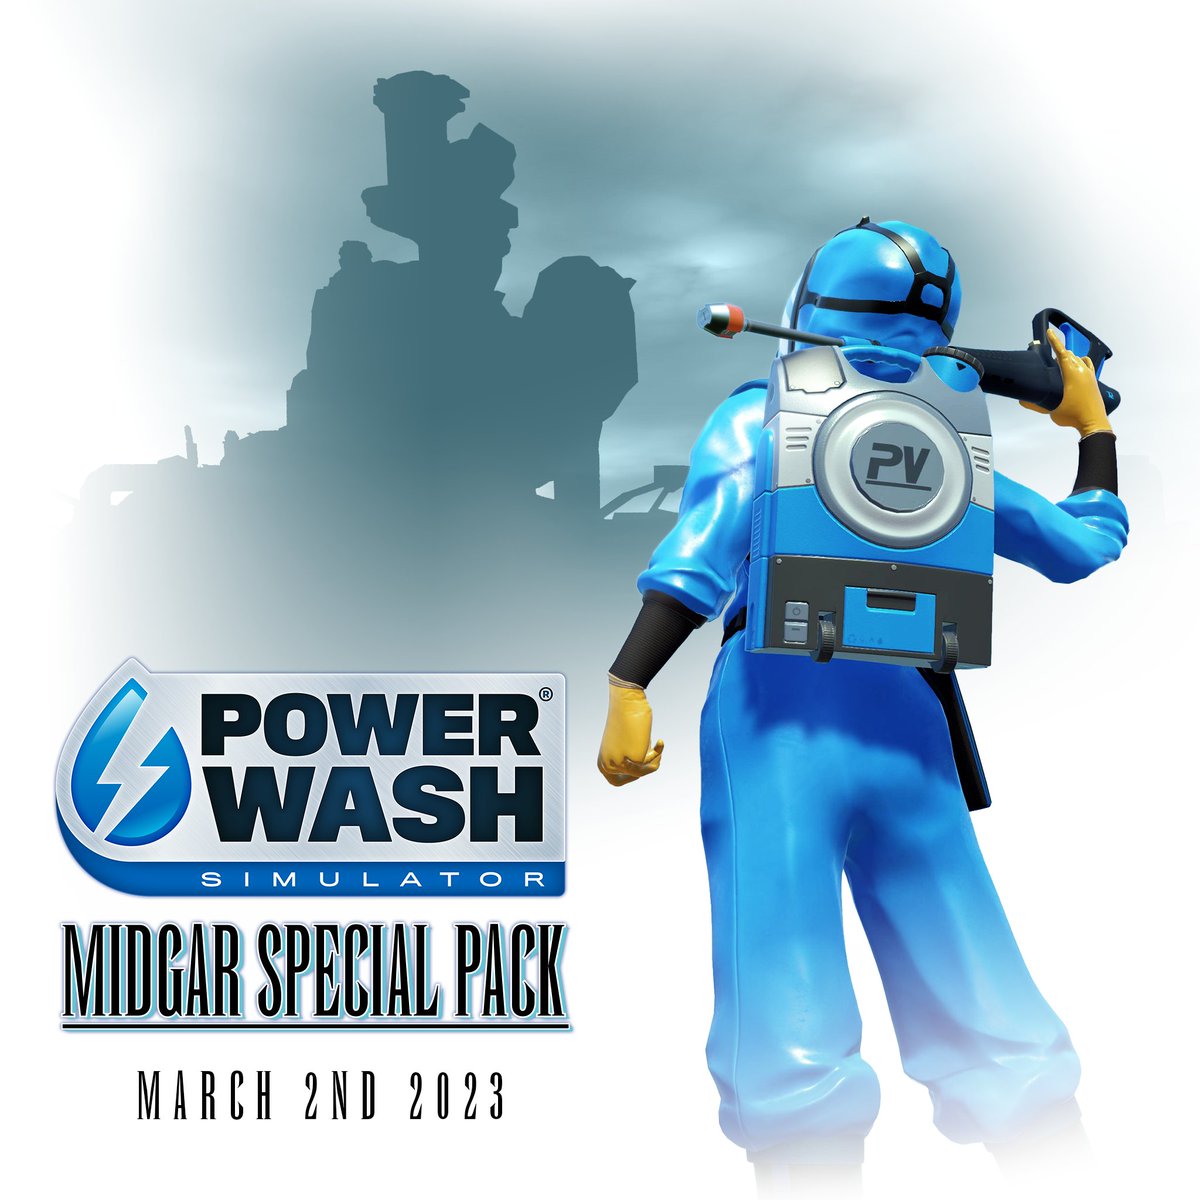 The key art for PowerWash Simulator's Midgar Special Pack.